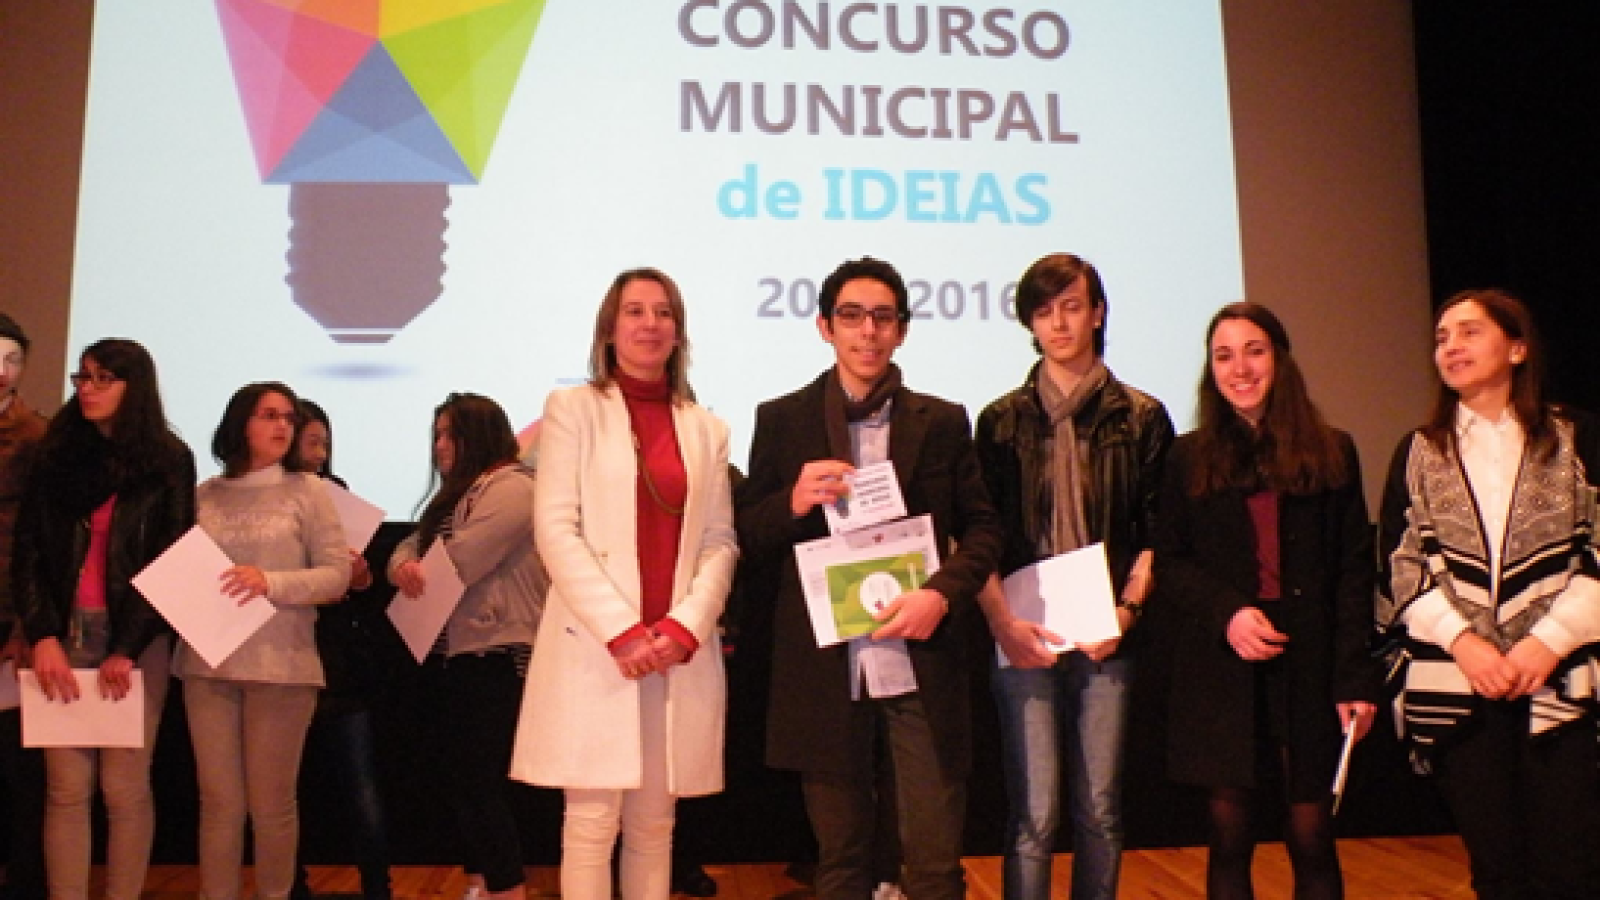 Vencedores do Concurso Municipal de Ideias 2015/2016 - Figueiró dos Vinhos